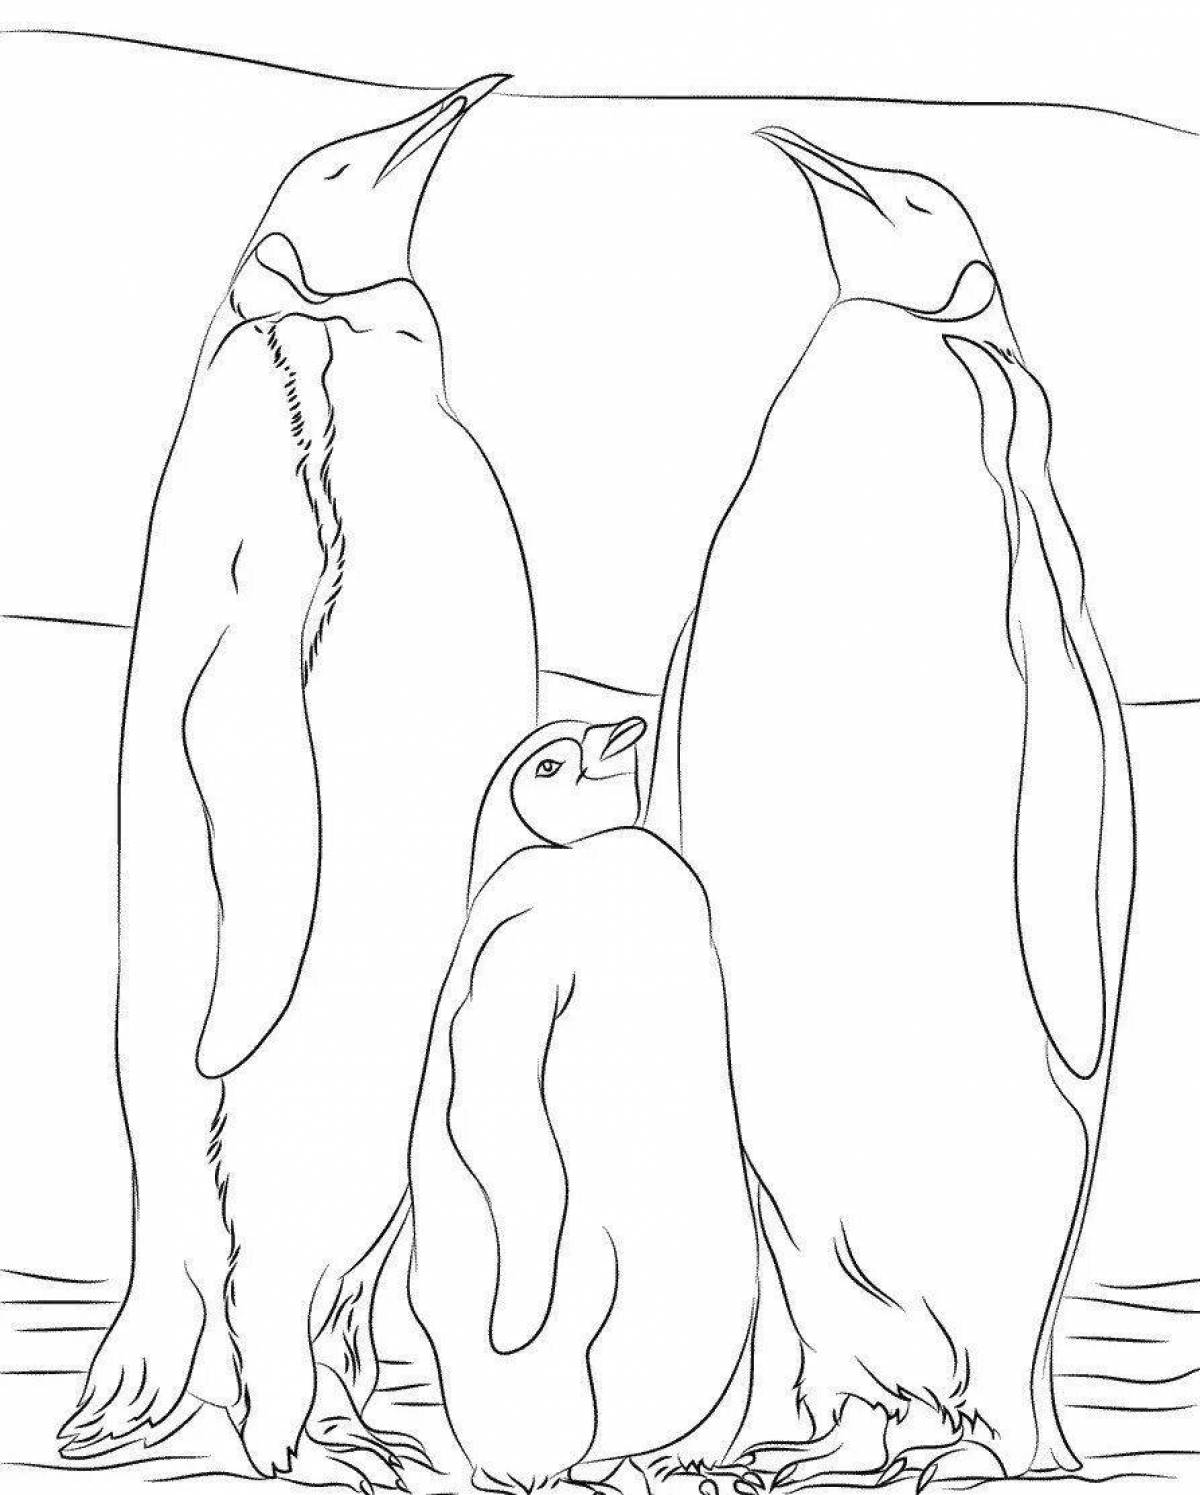 Weird penguin family coloring